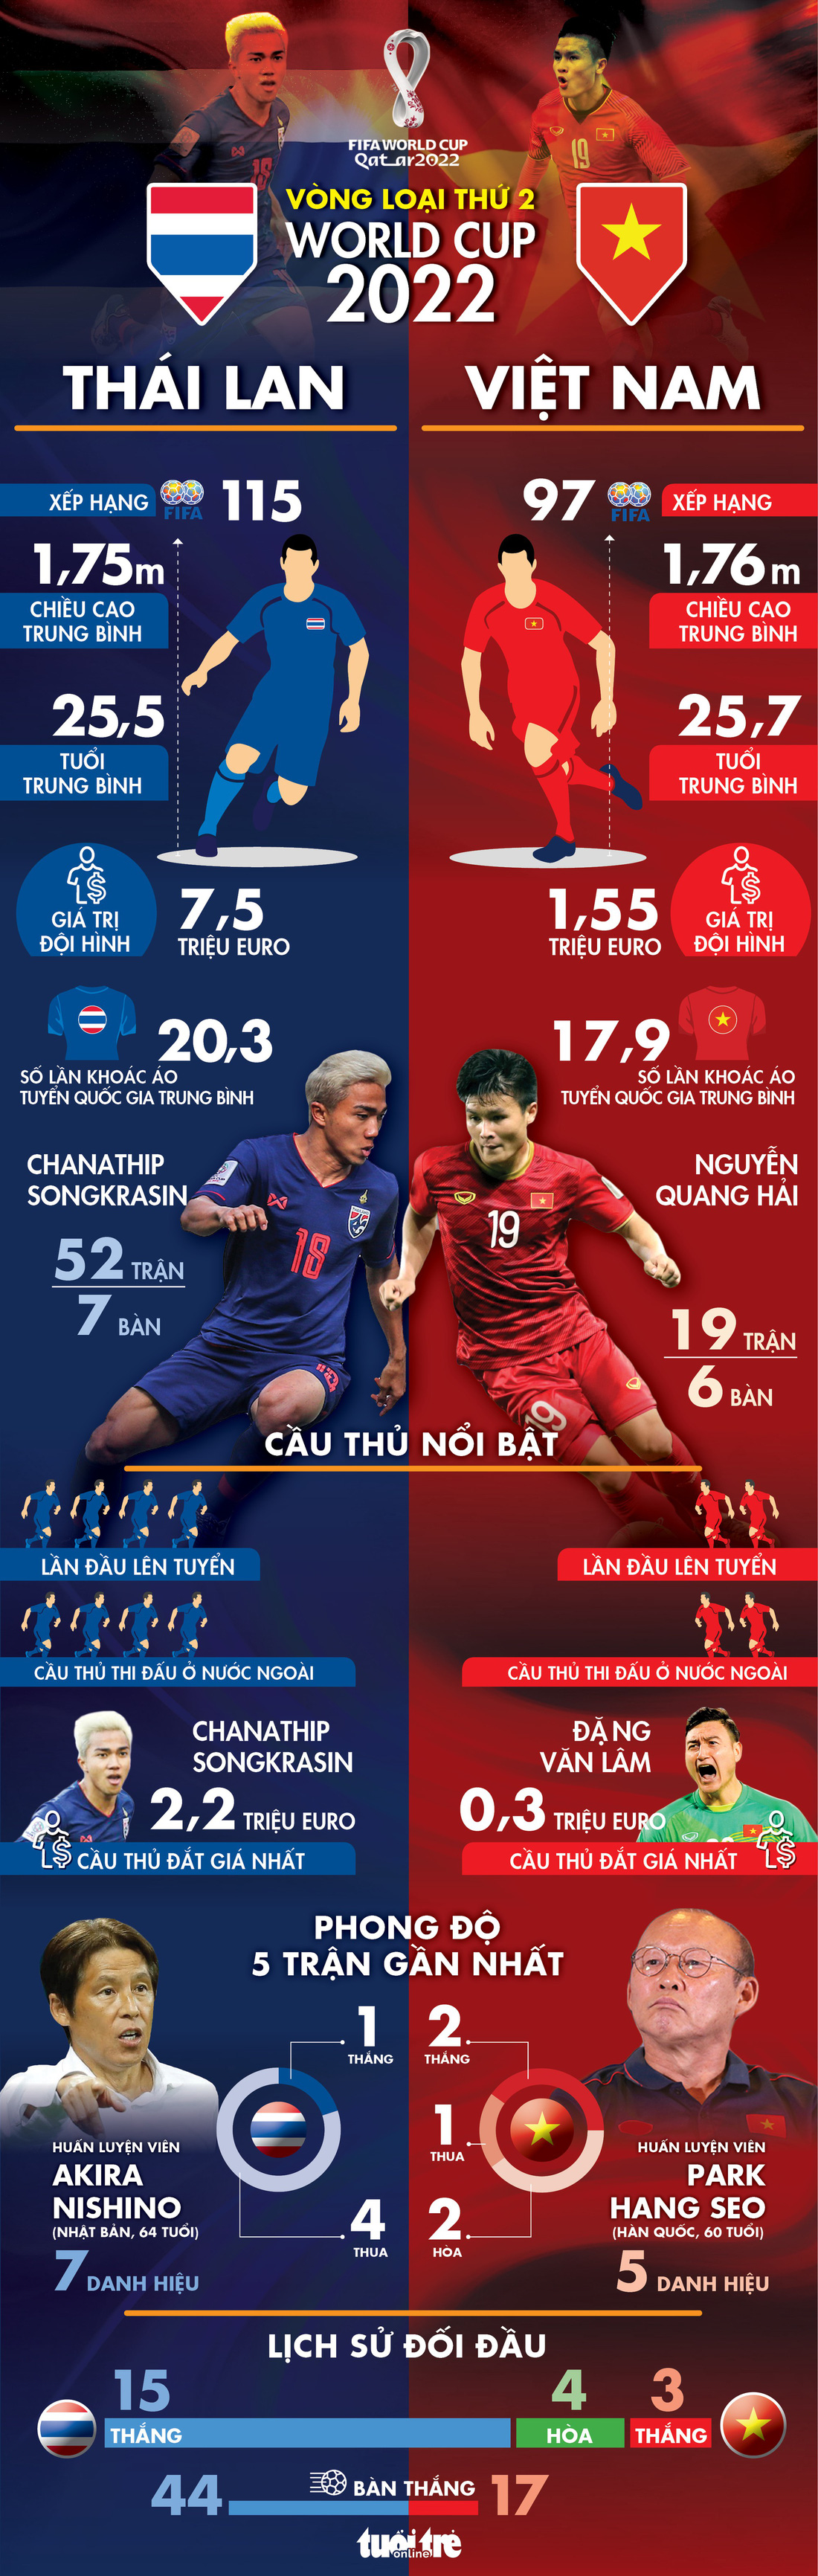 Infographic so sánh sức mạnh giữa Thái Lan và Việt Nam - Ảnh 1.